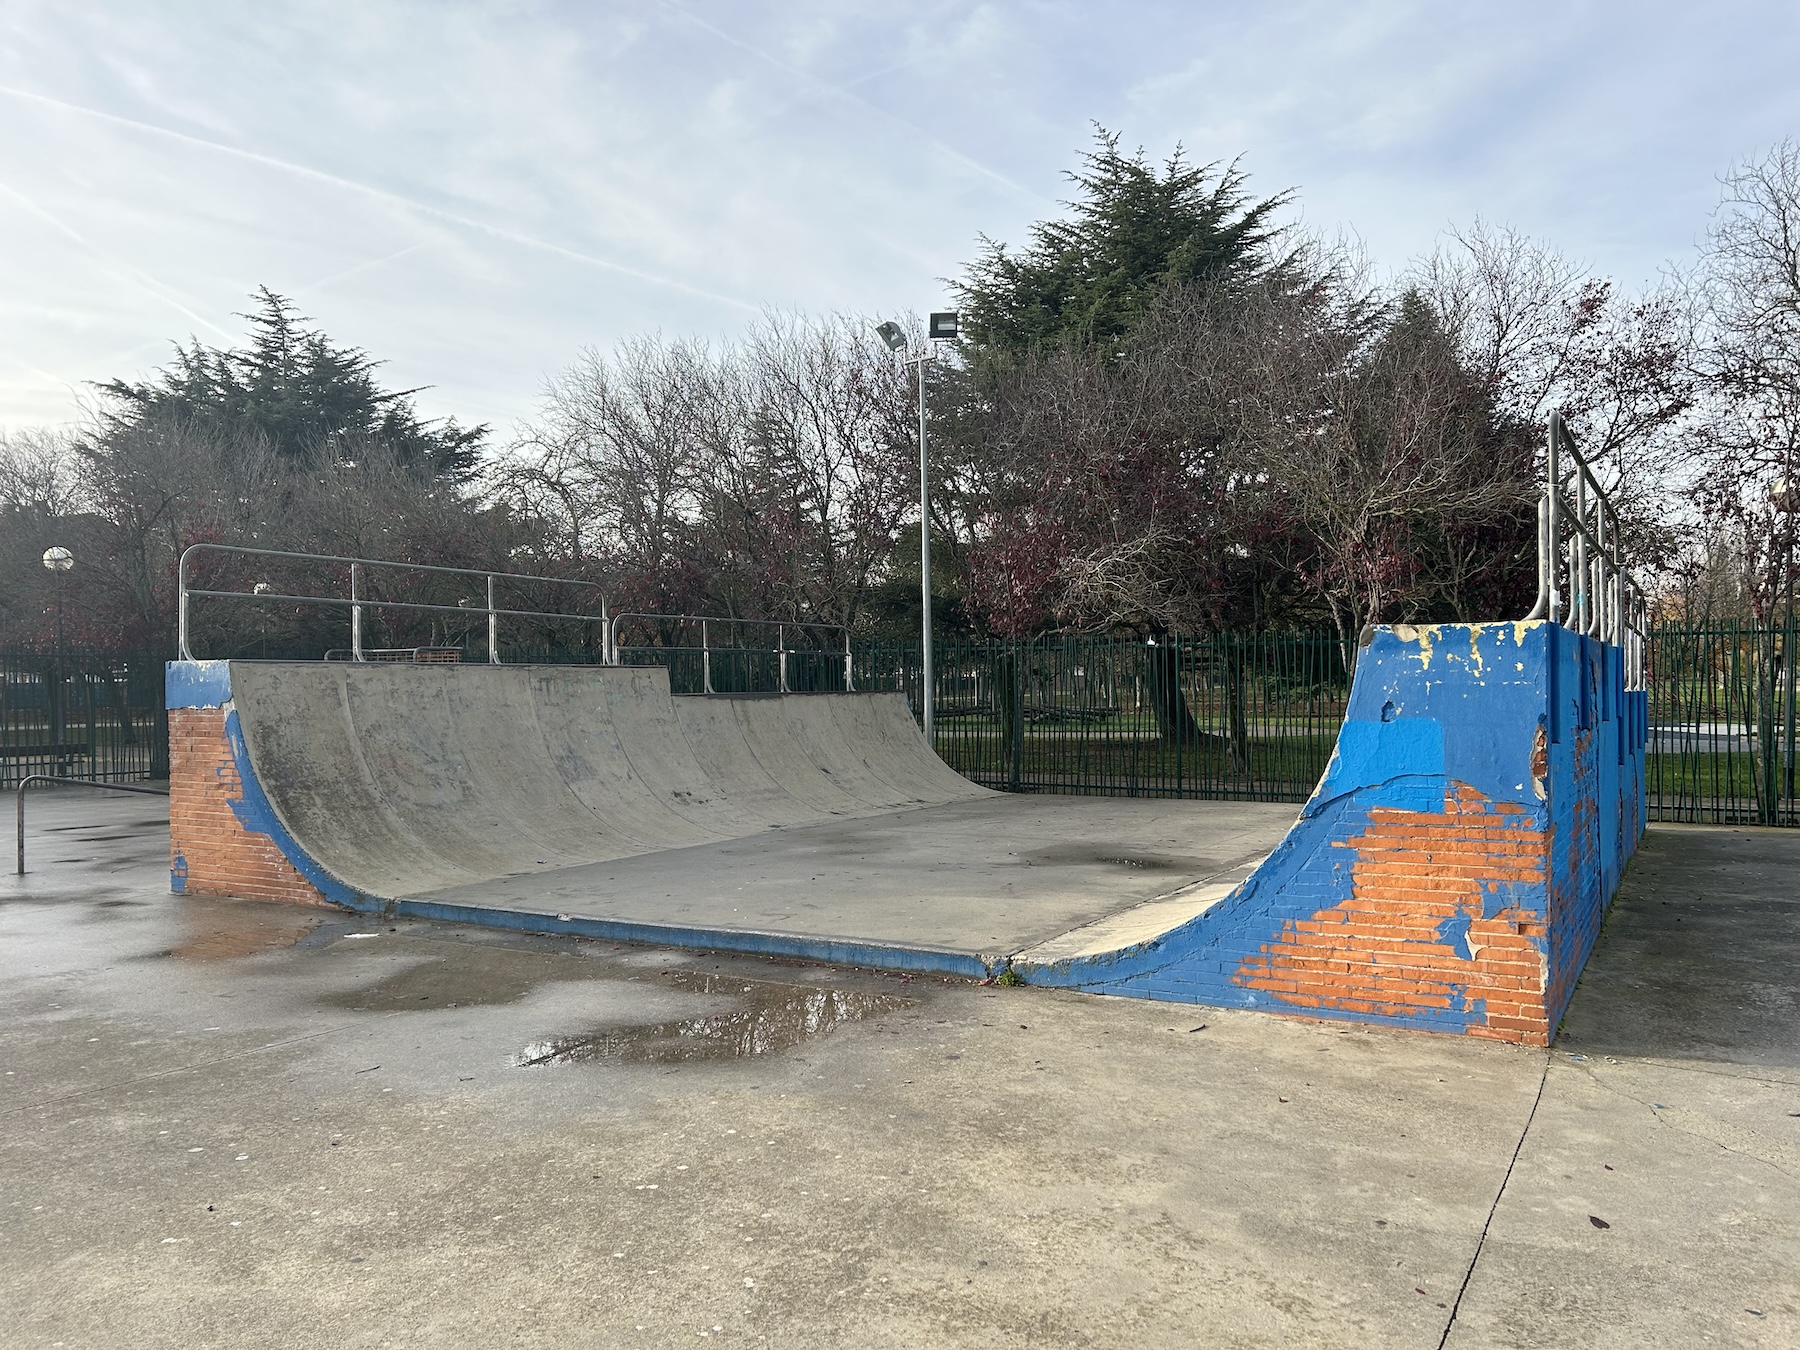 Barañáin skatepark